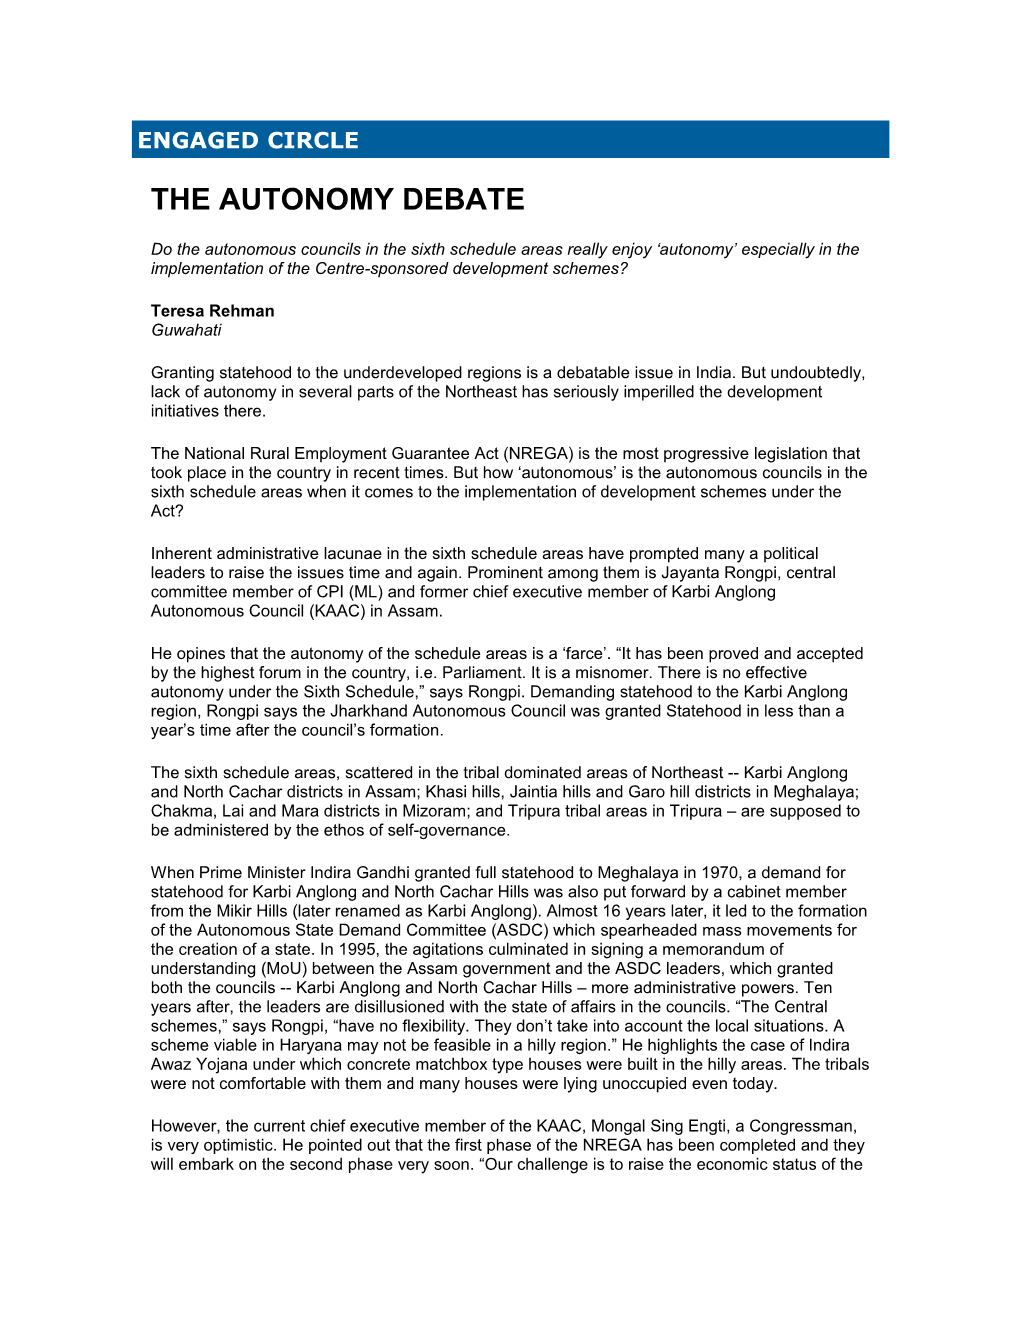 The Autonomy Debate